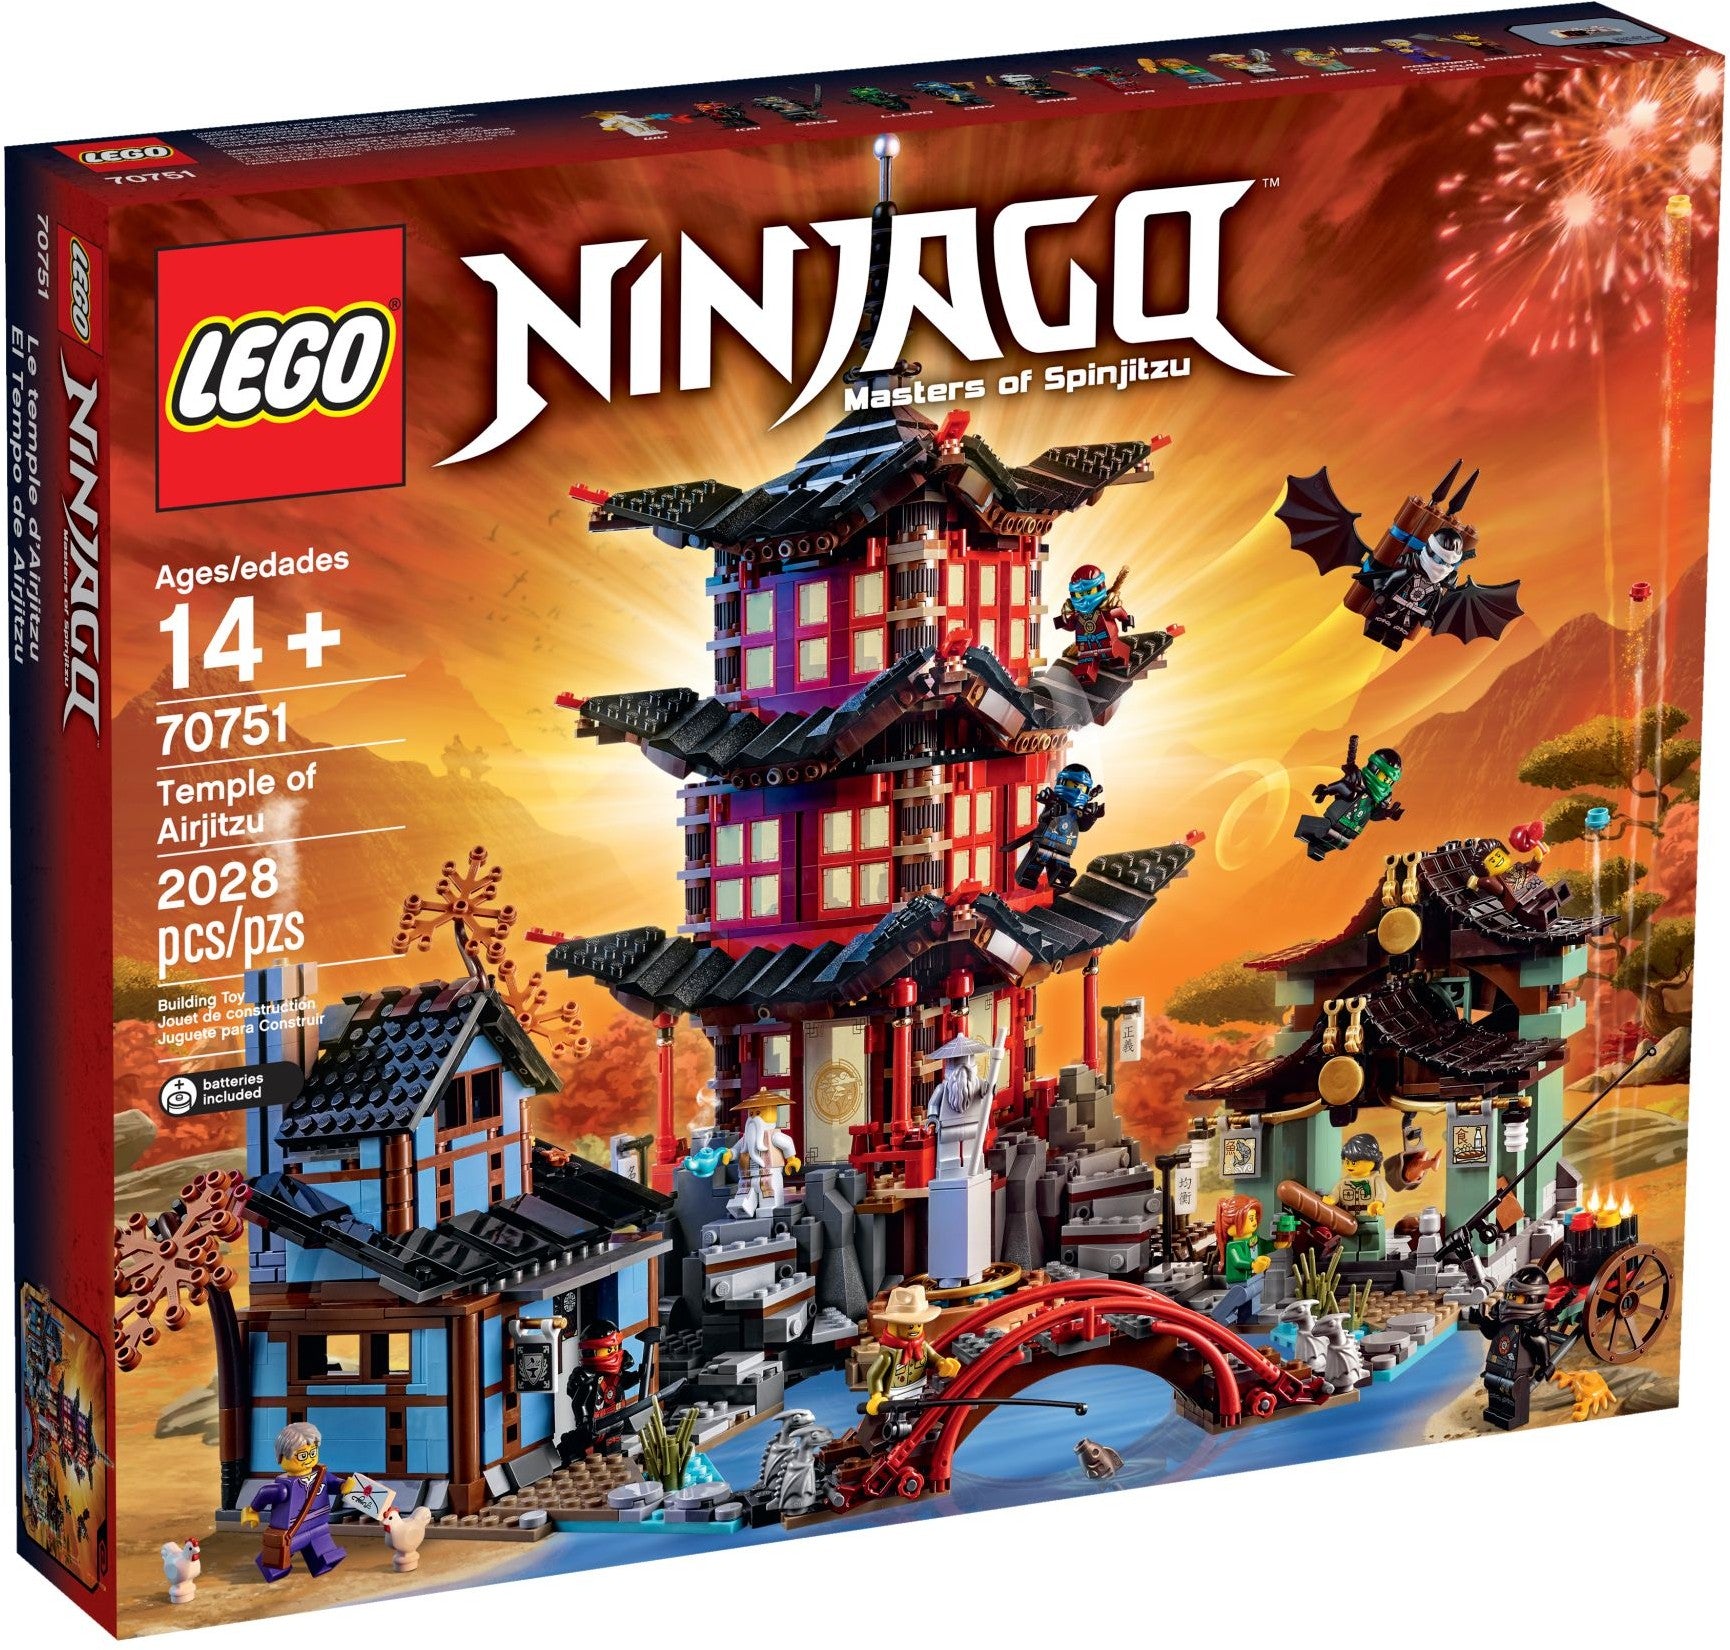 Lego Ninjago 70751 - Temple of Airjitzu